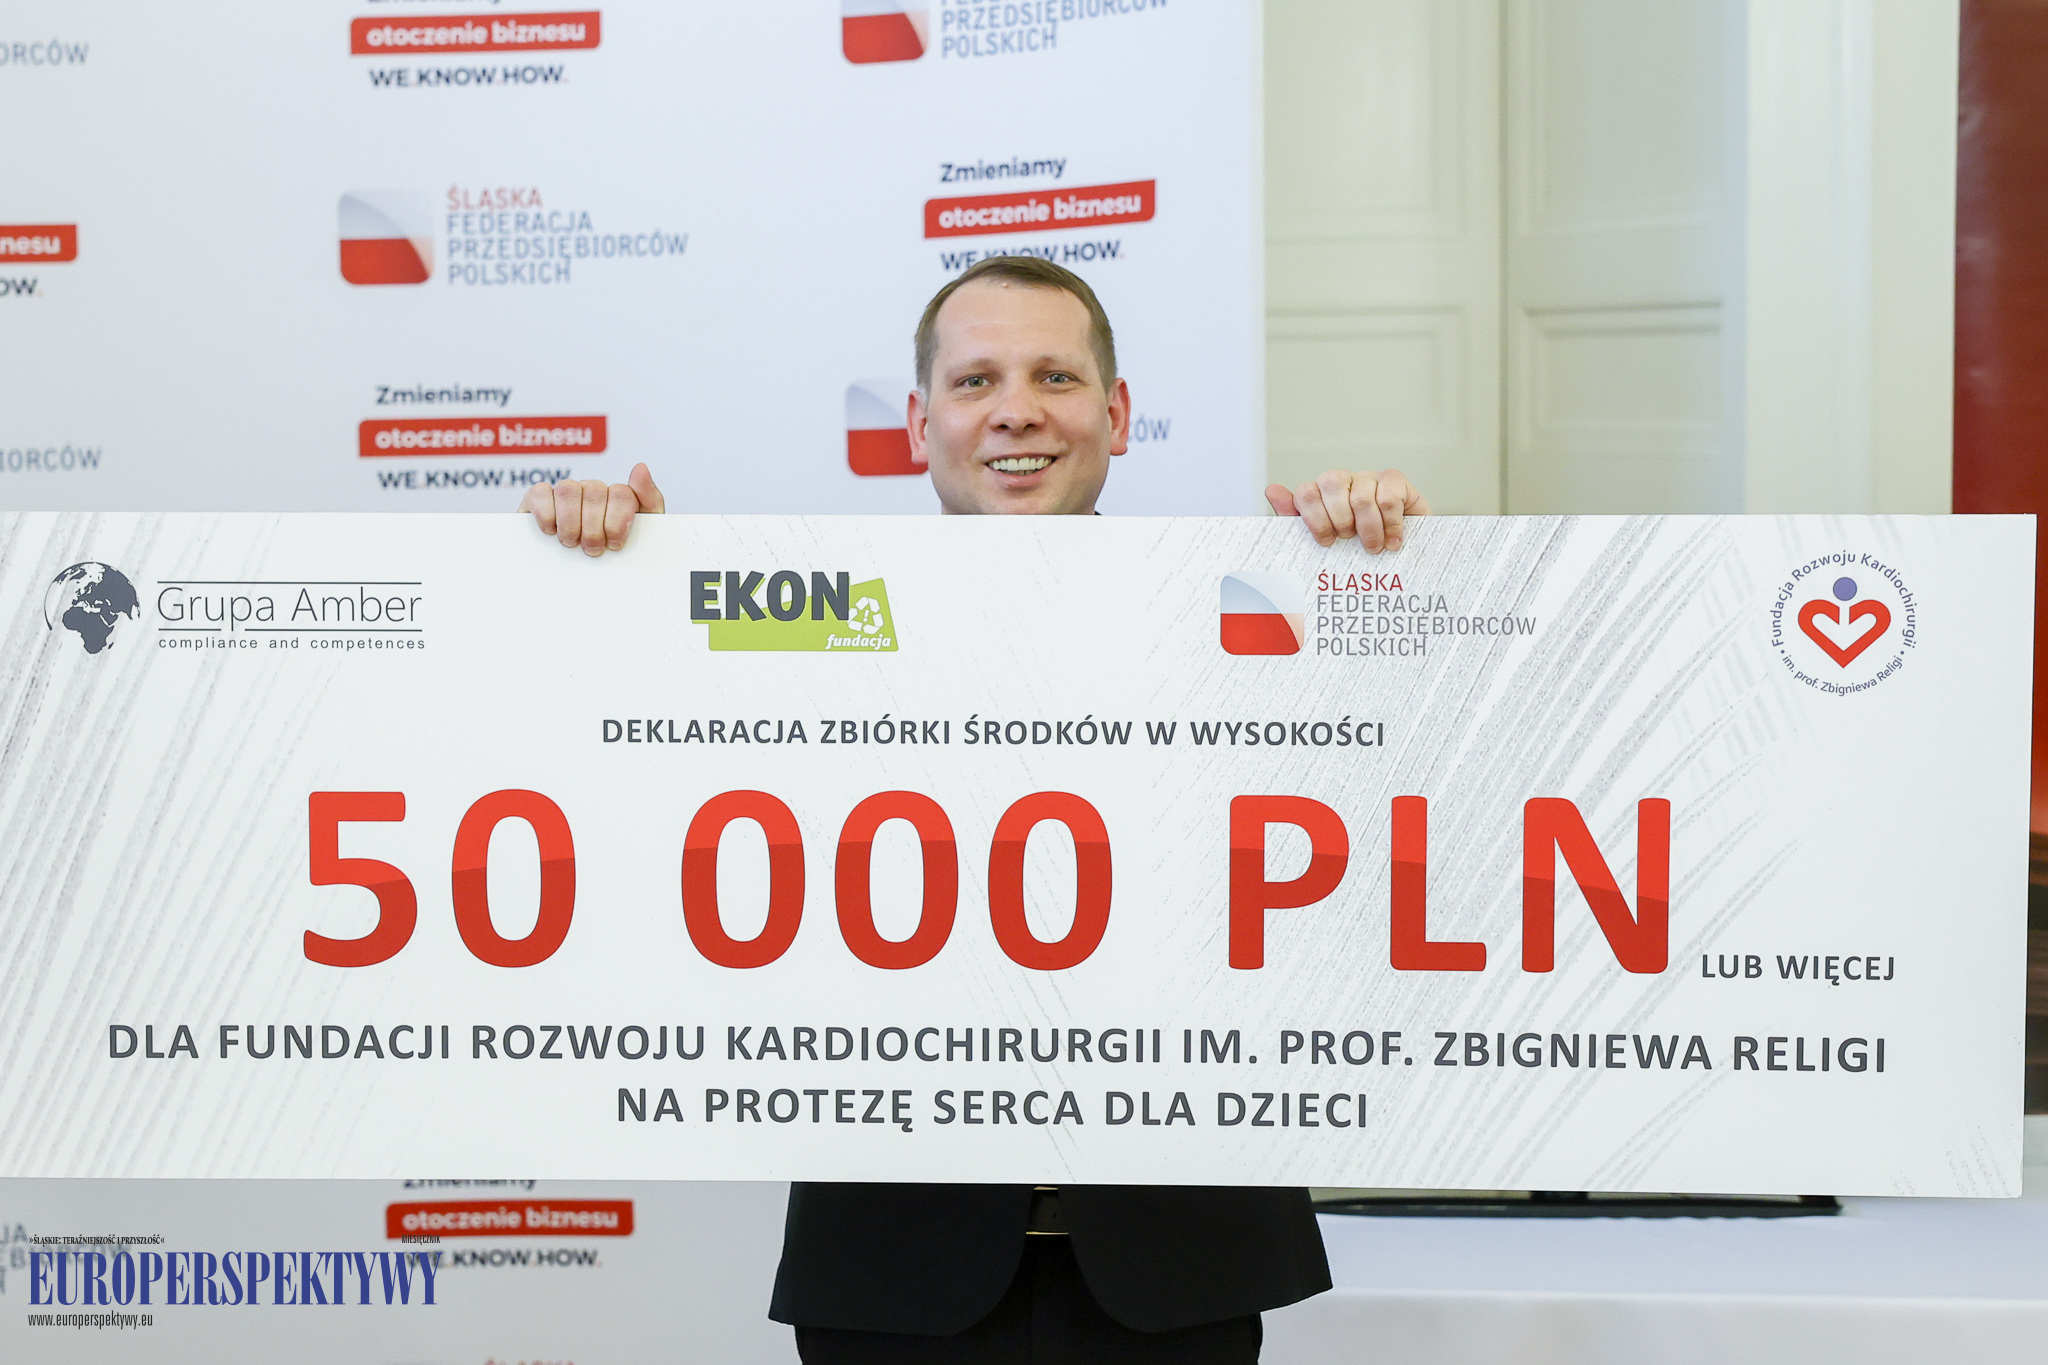 Europerspektywy Śląska Federacja Przedsiębiorców Polskich uruchomiona